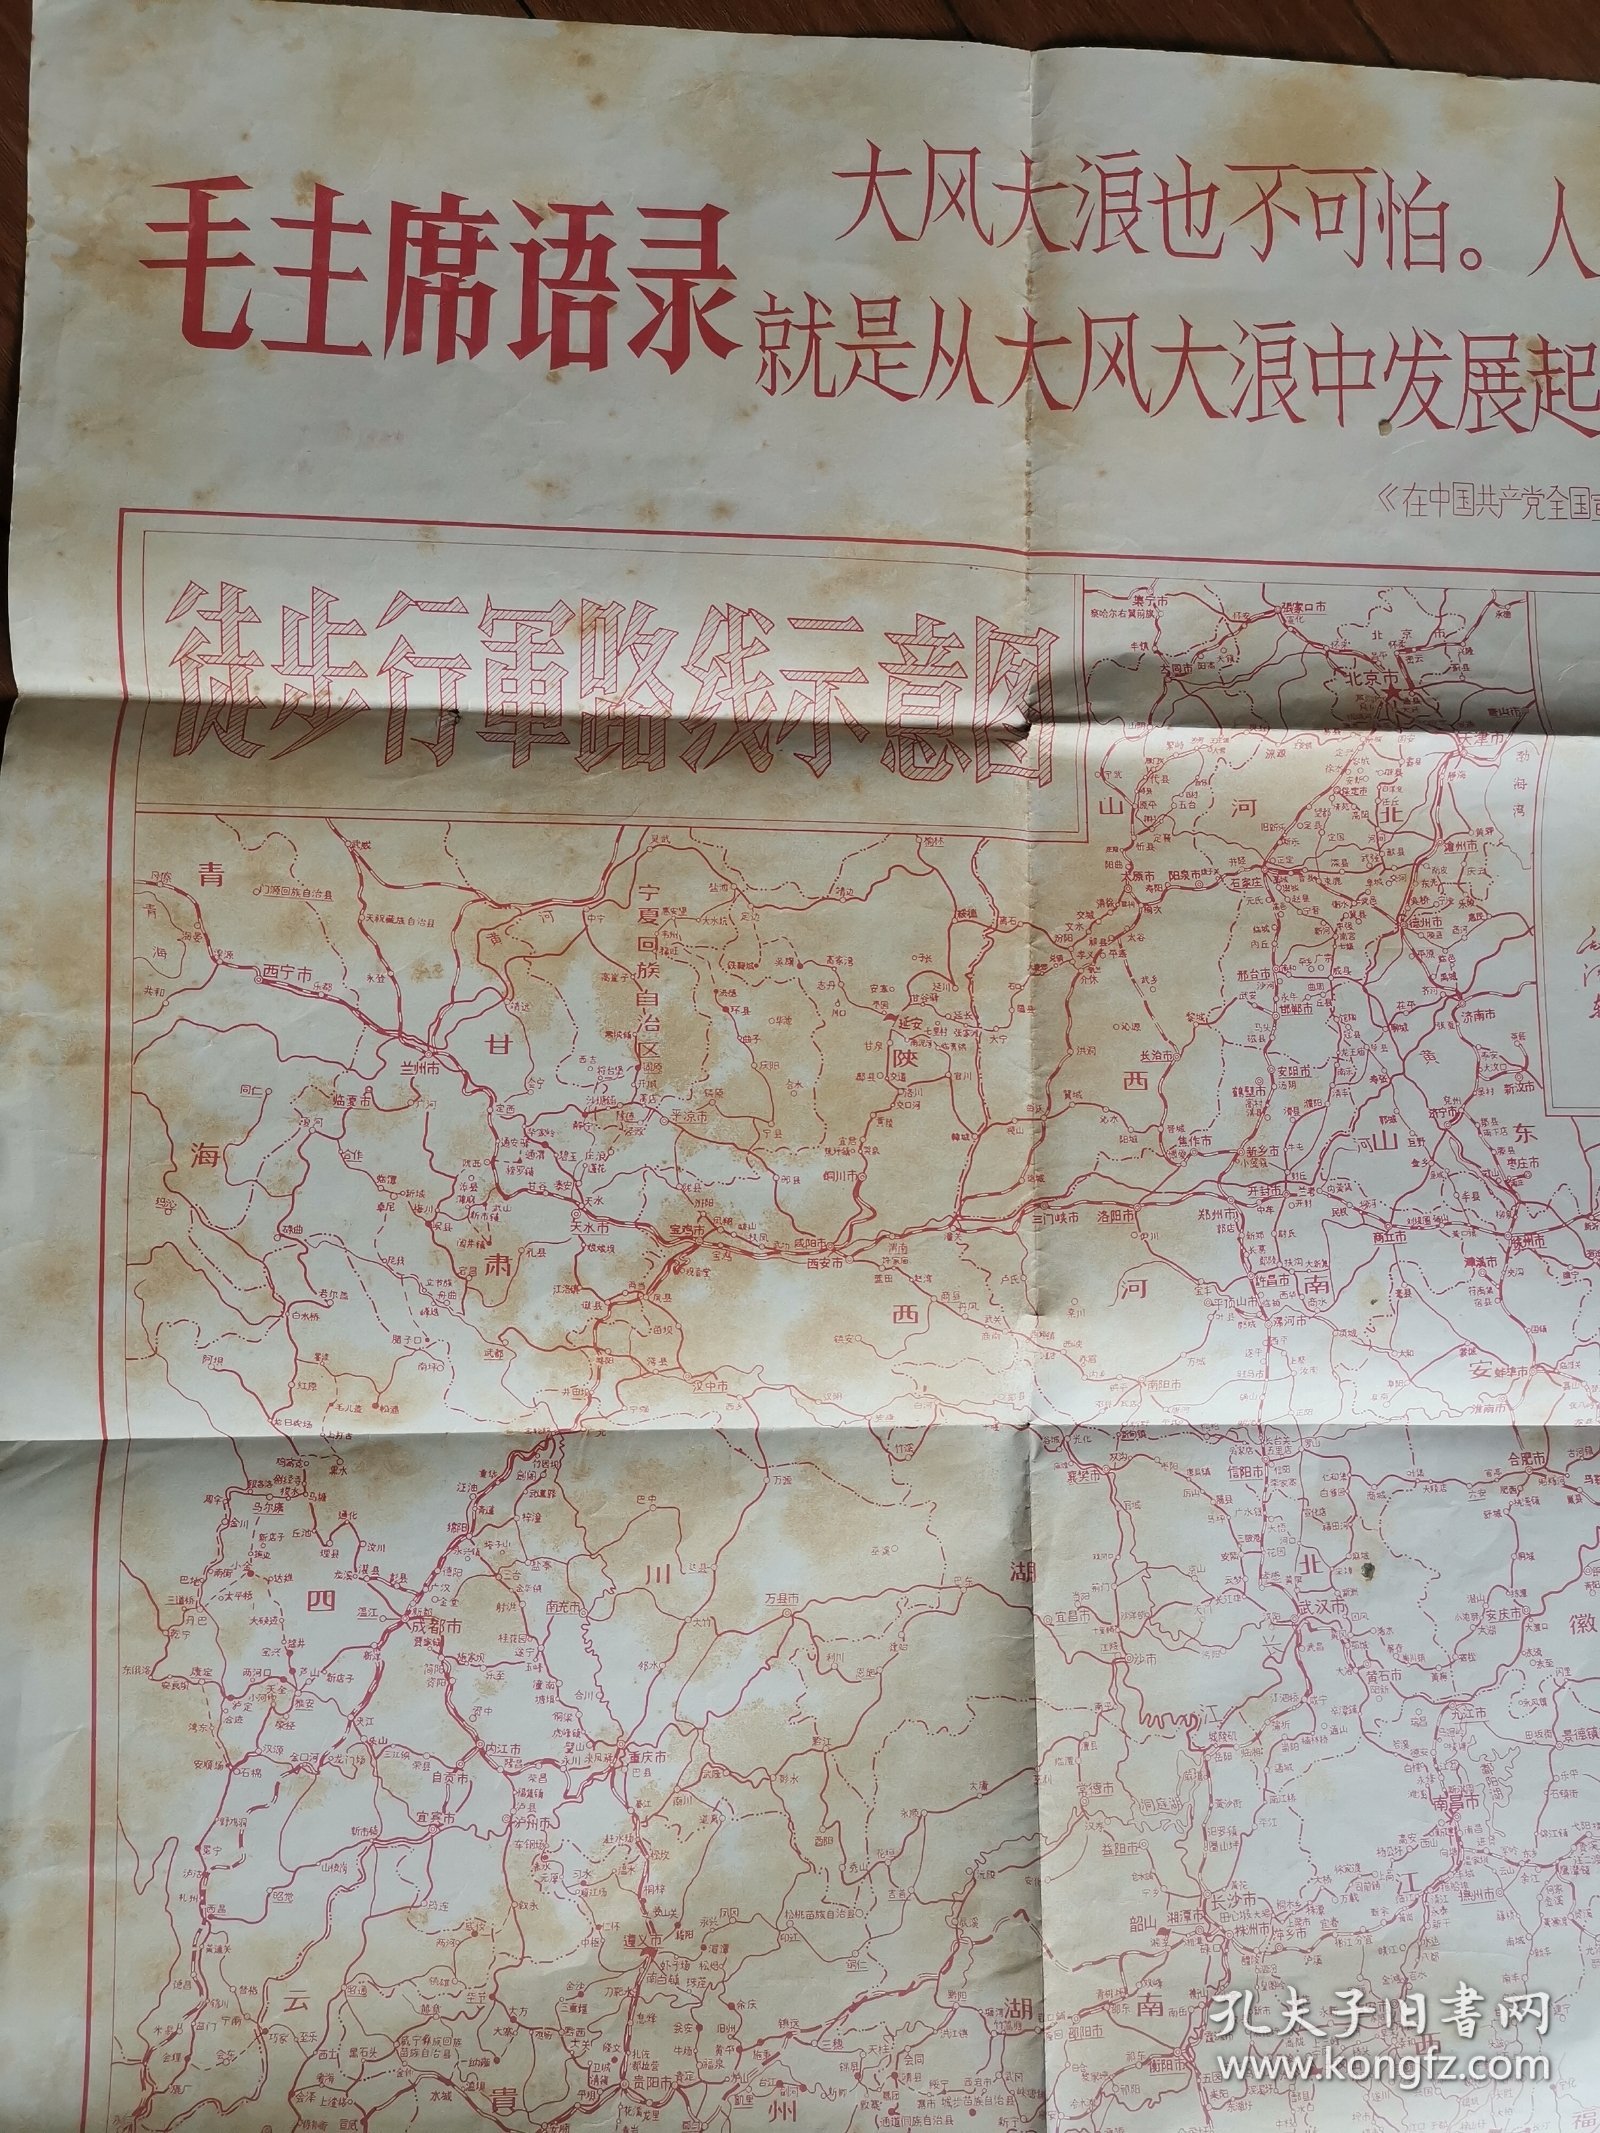 **地图：徒步行军路线示意图（2开1966年带语录地图）